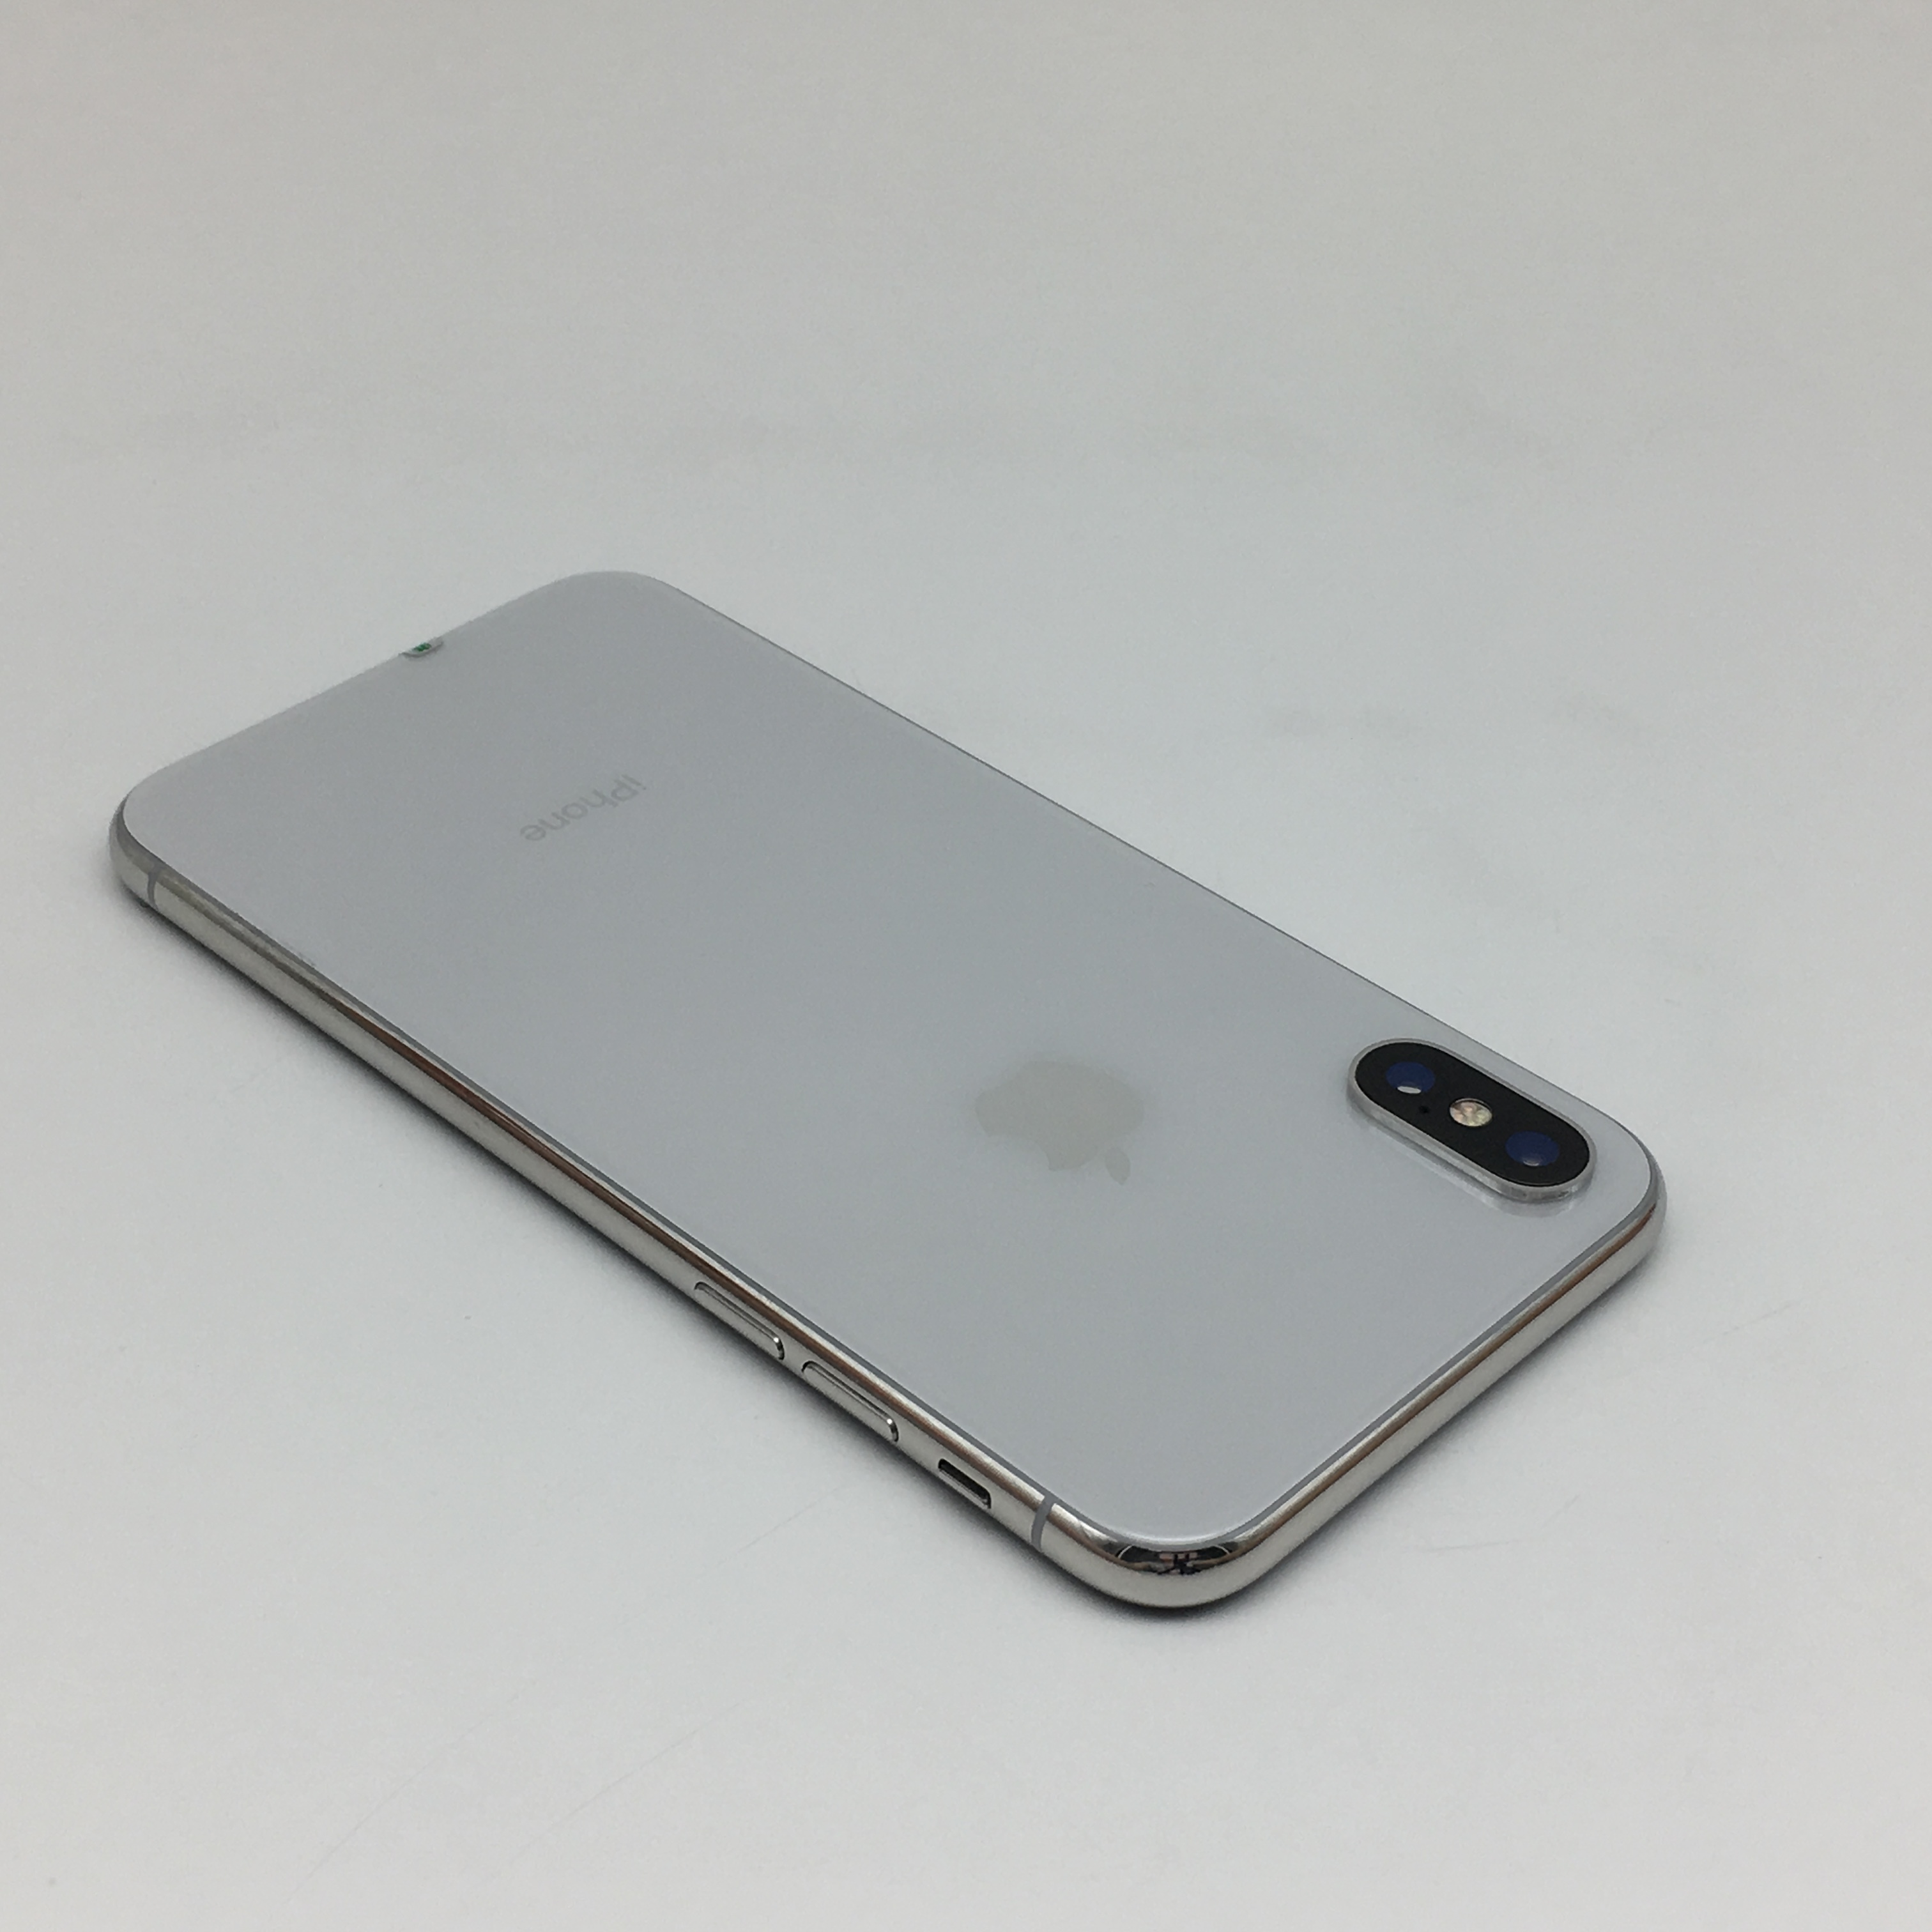 苹果【iphone x】全网通 银色 64g 国行 8成新 真机实拍